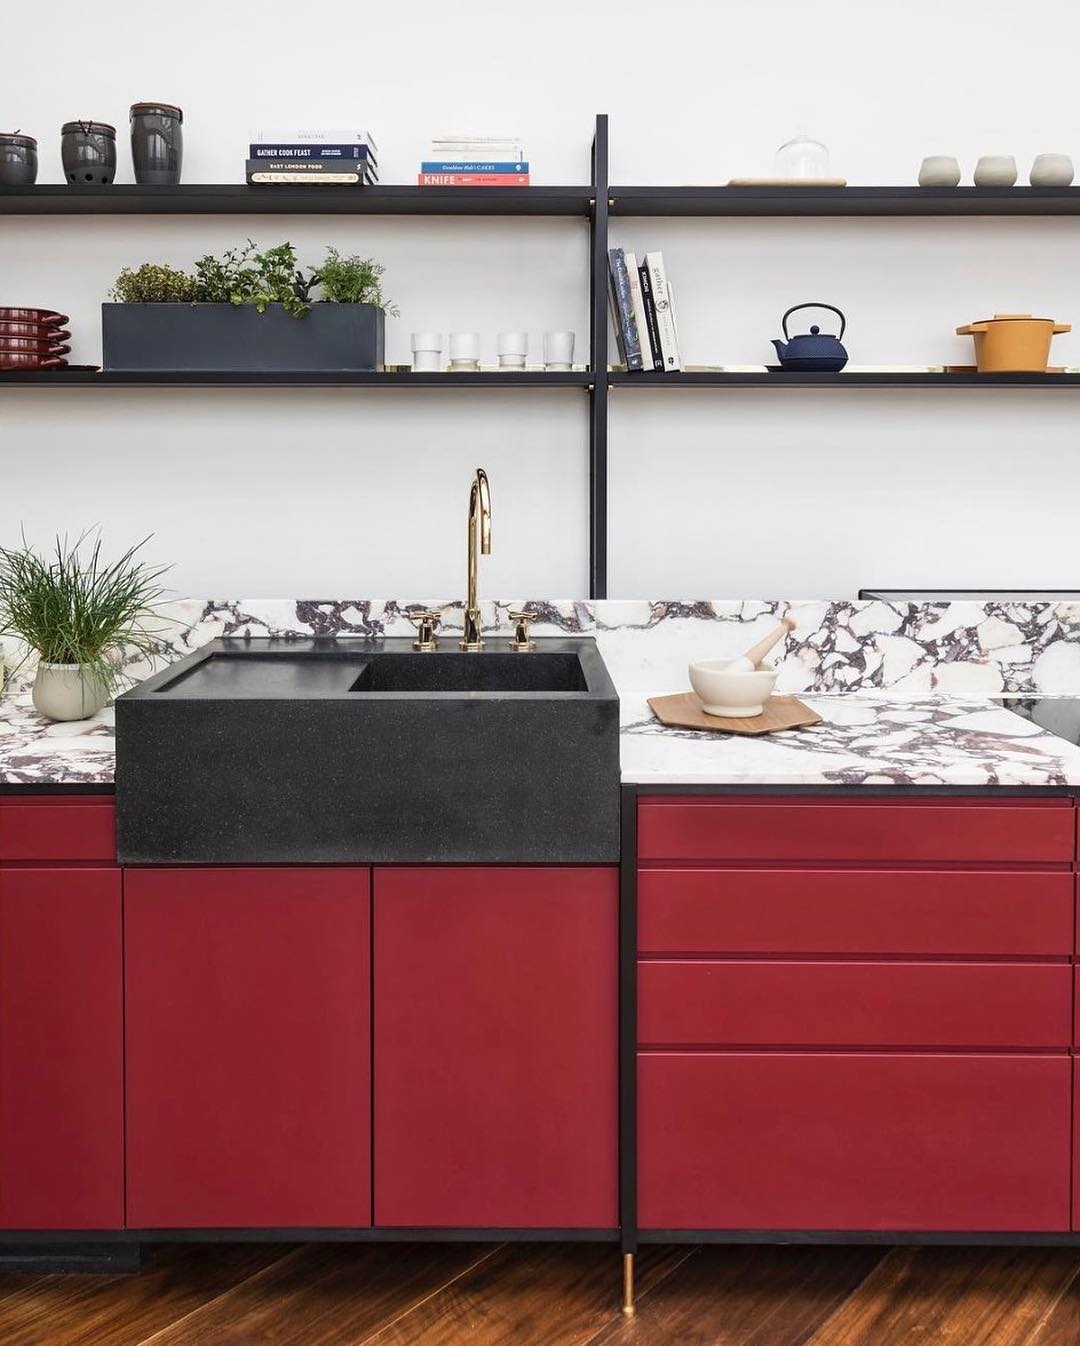 Красная кухня в интерьере с фото - идеи дизайна кухонного гарнитура в красных тонах